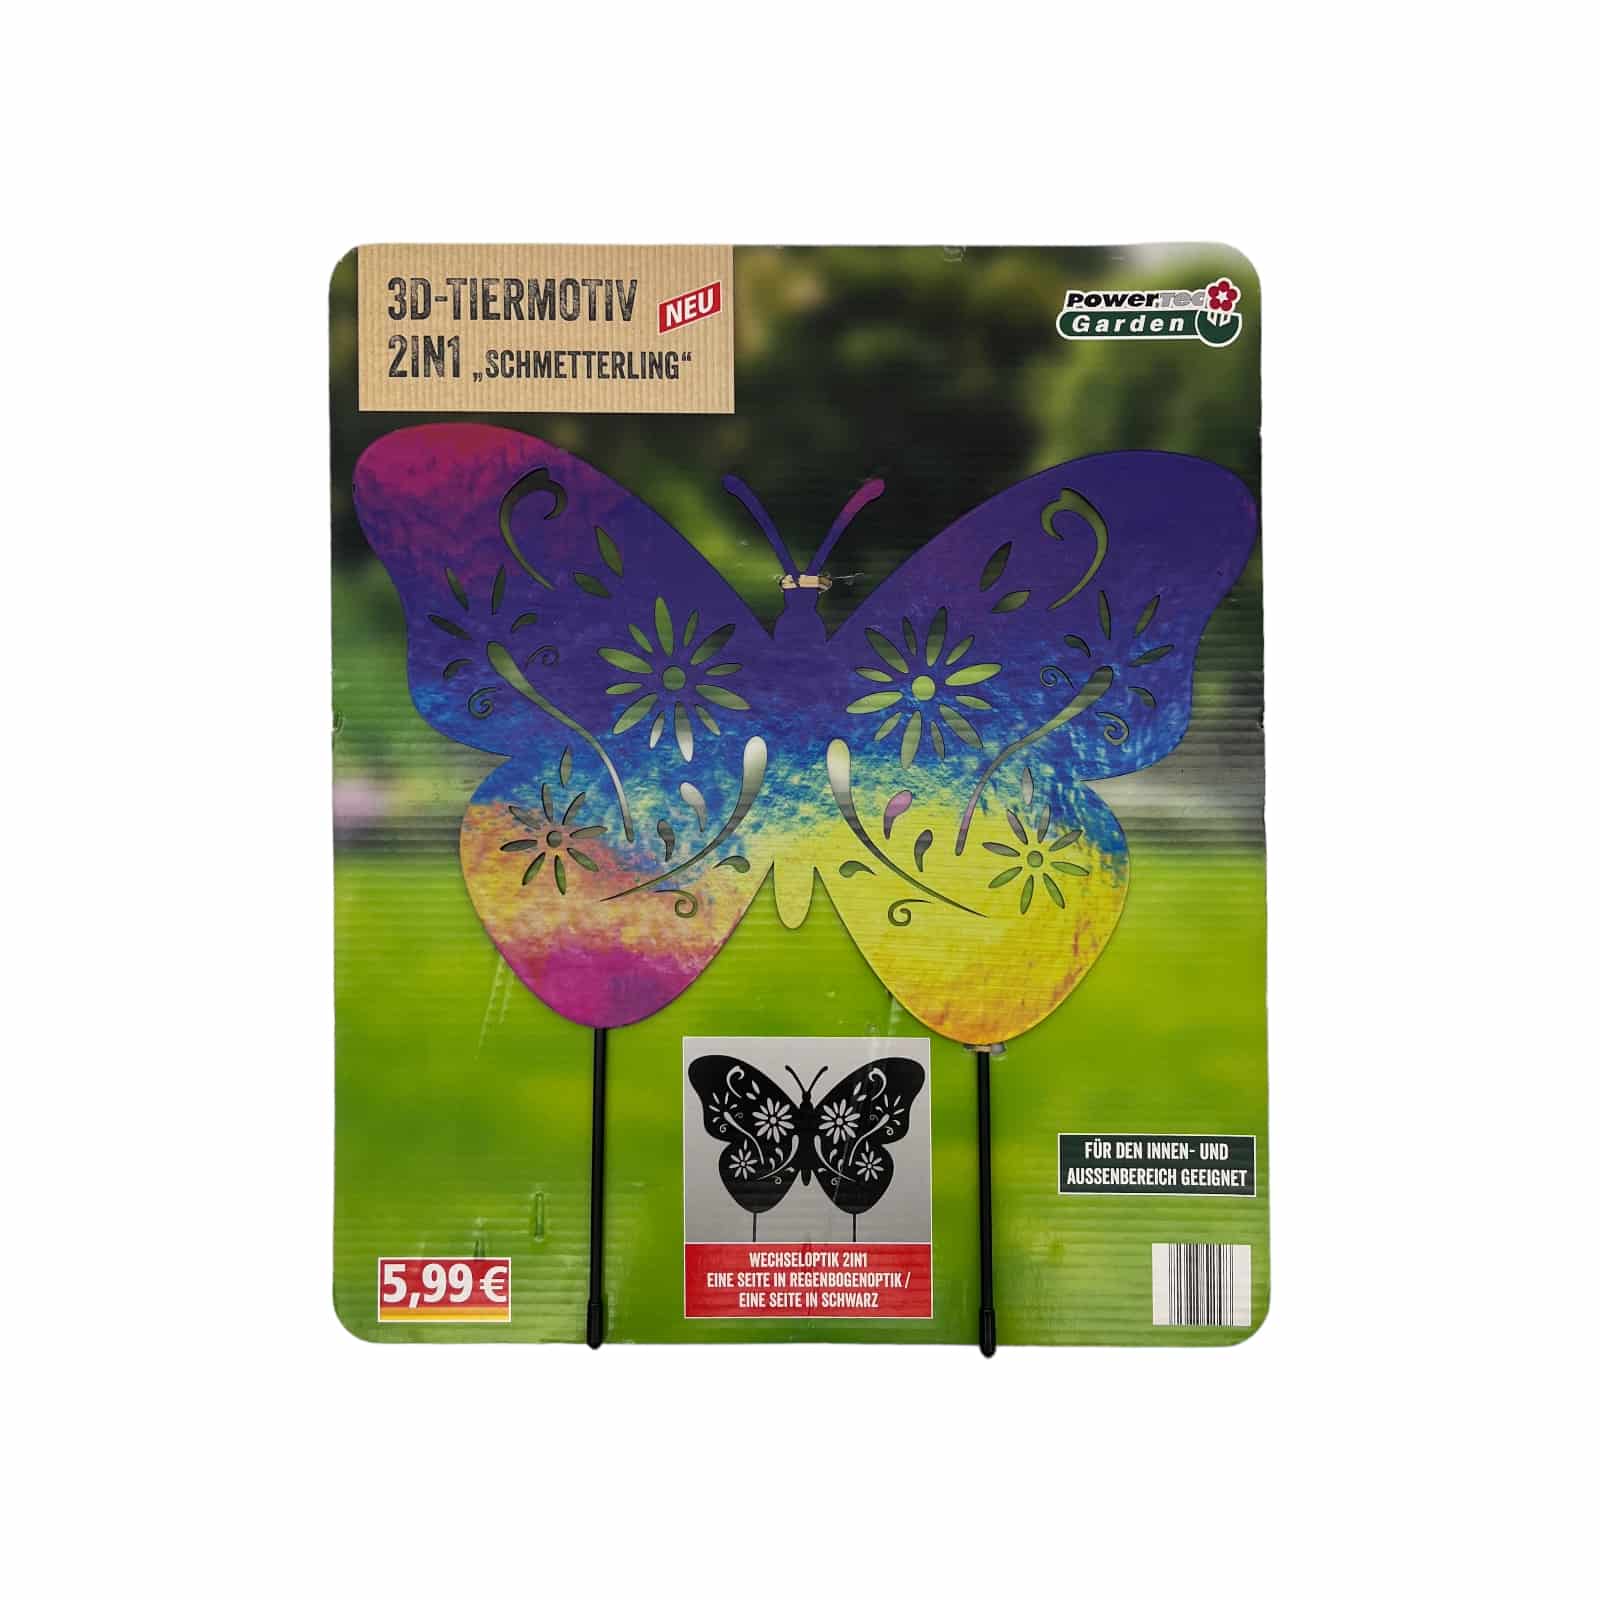 3D-Tiermotiv Schmetterling 2in1